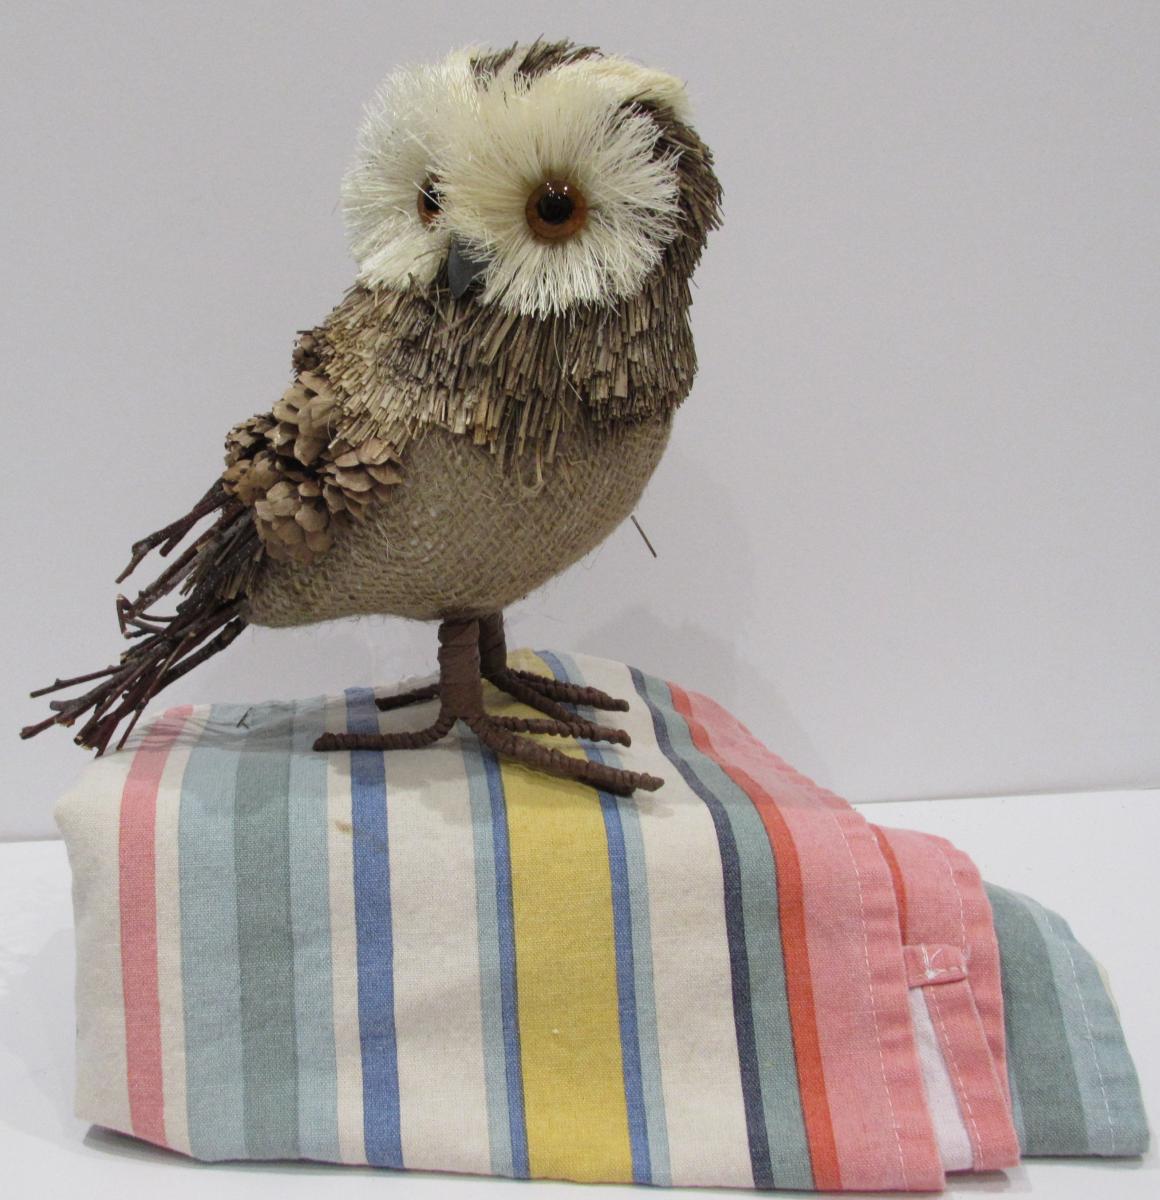 Owl on towel